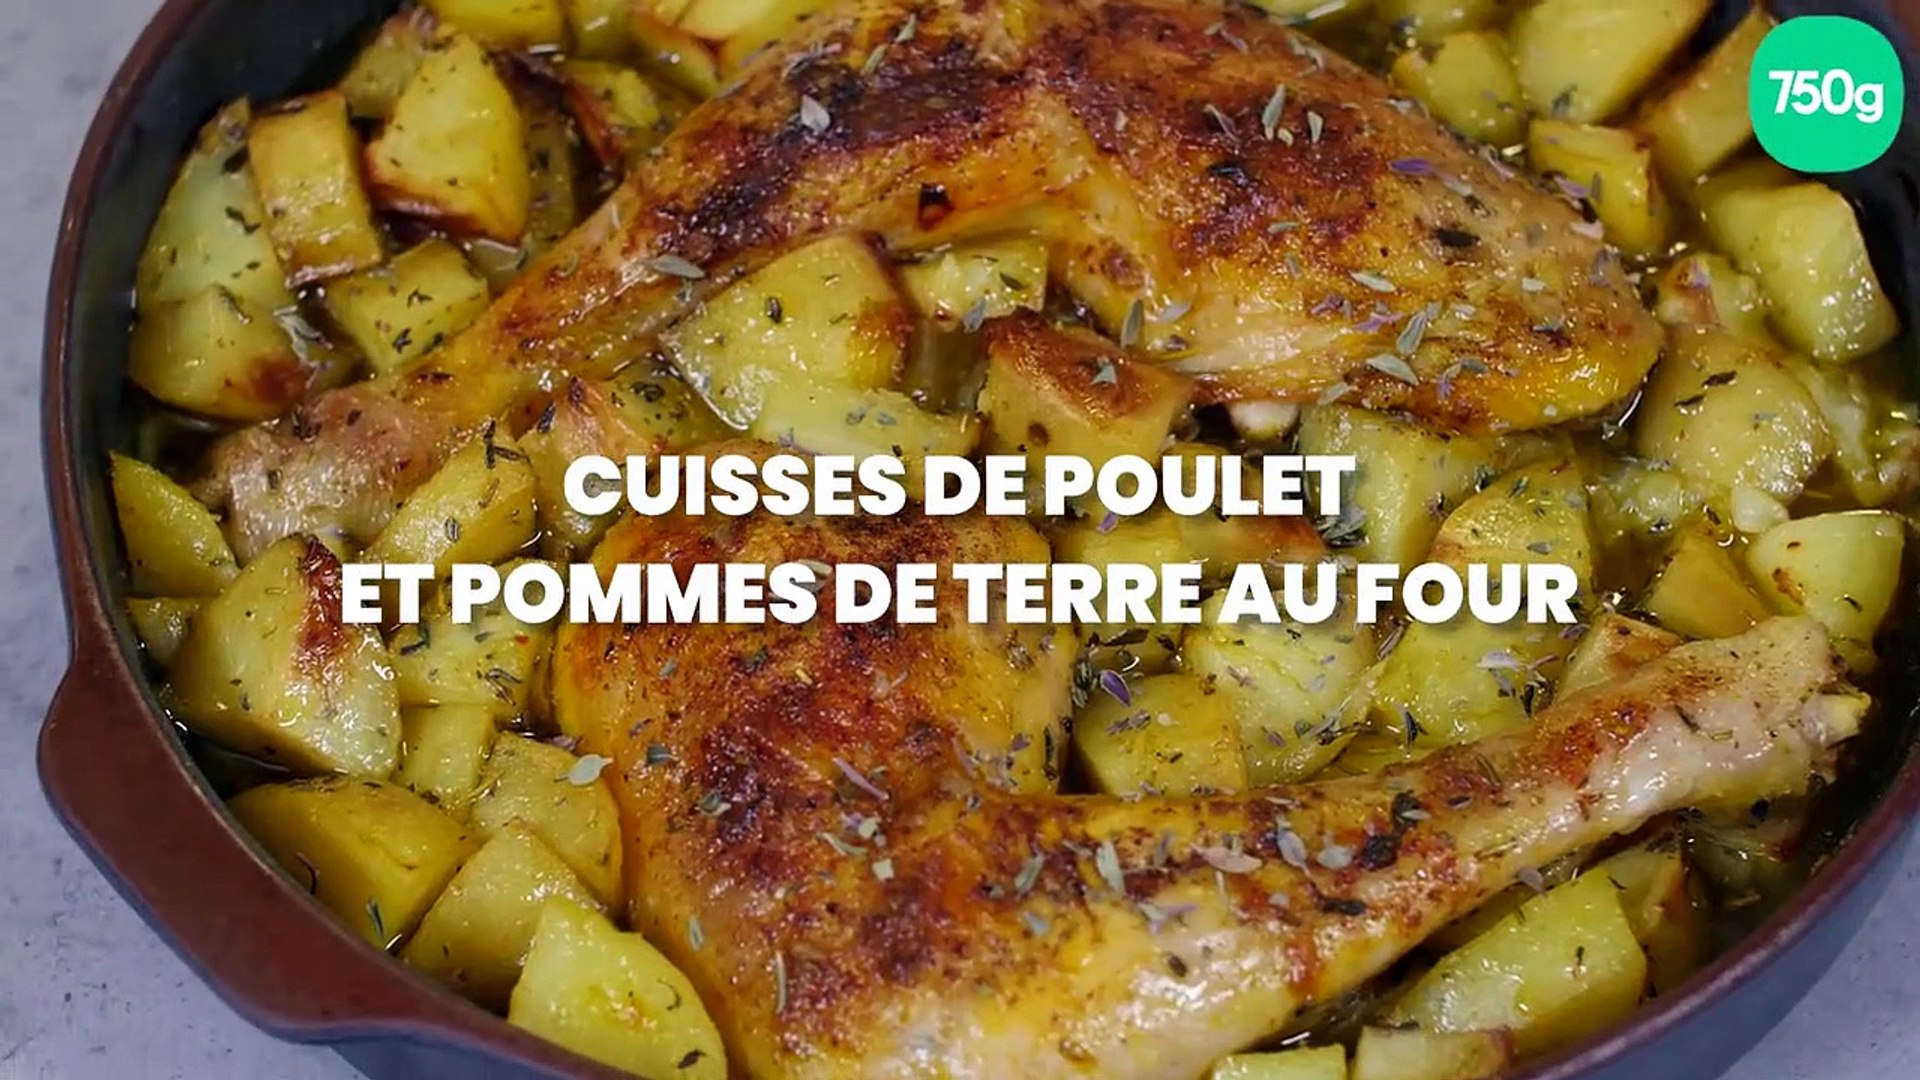 Cuisses de poulet et pomme de terre au four - Vidéo Dailymotion